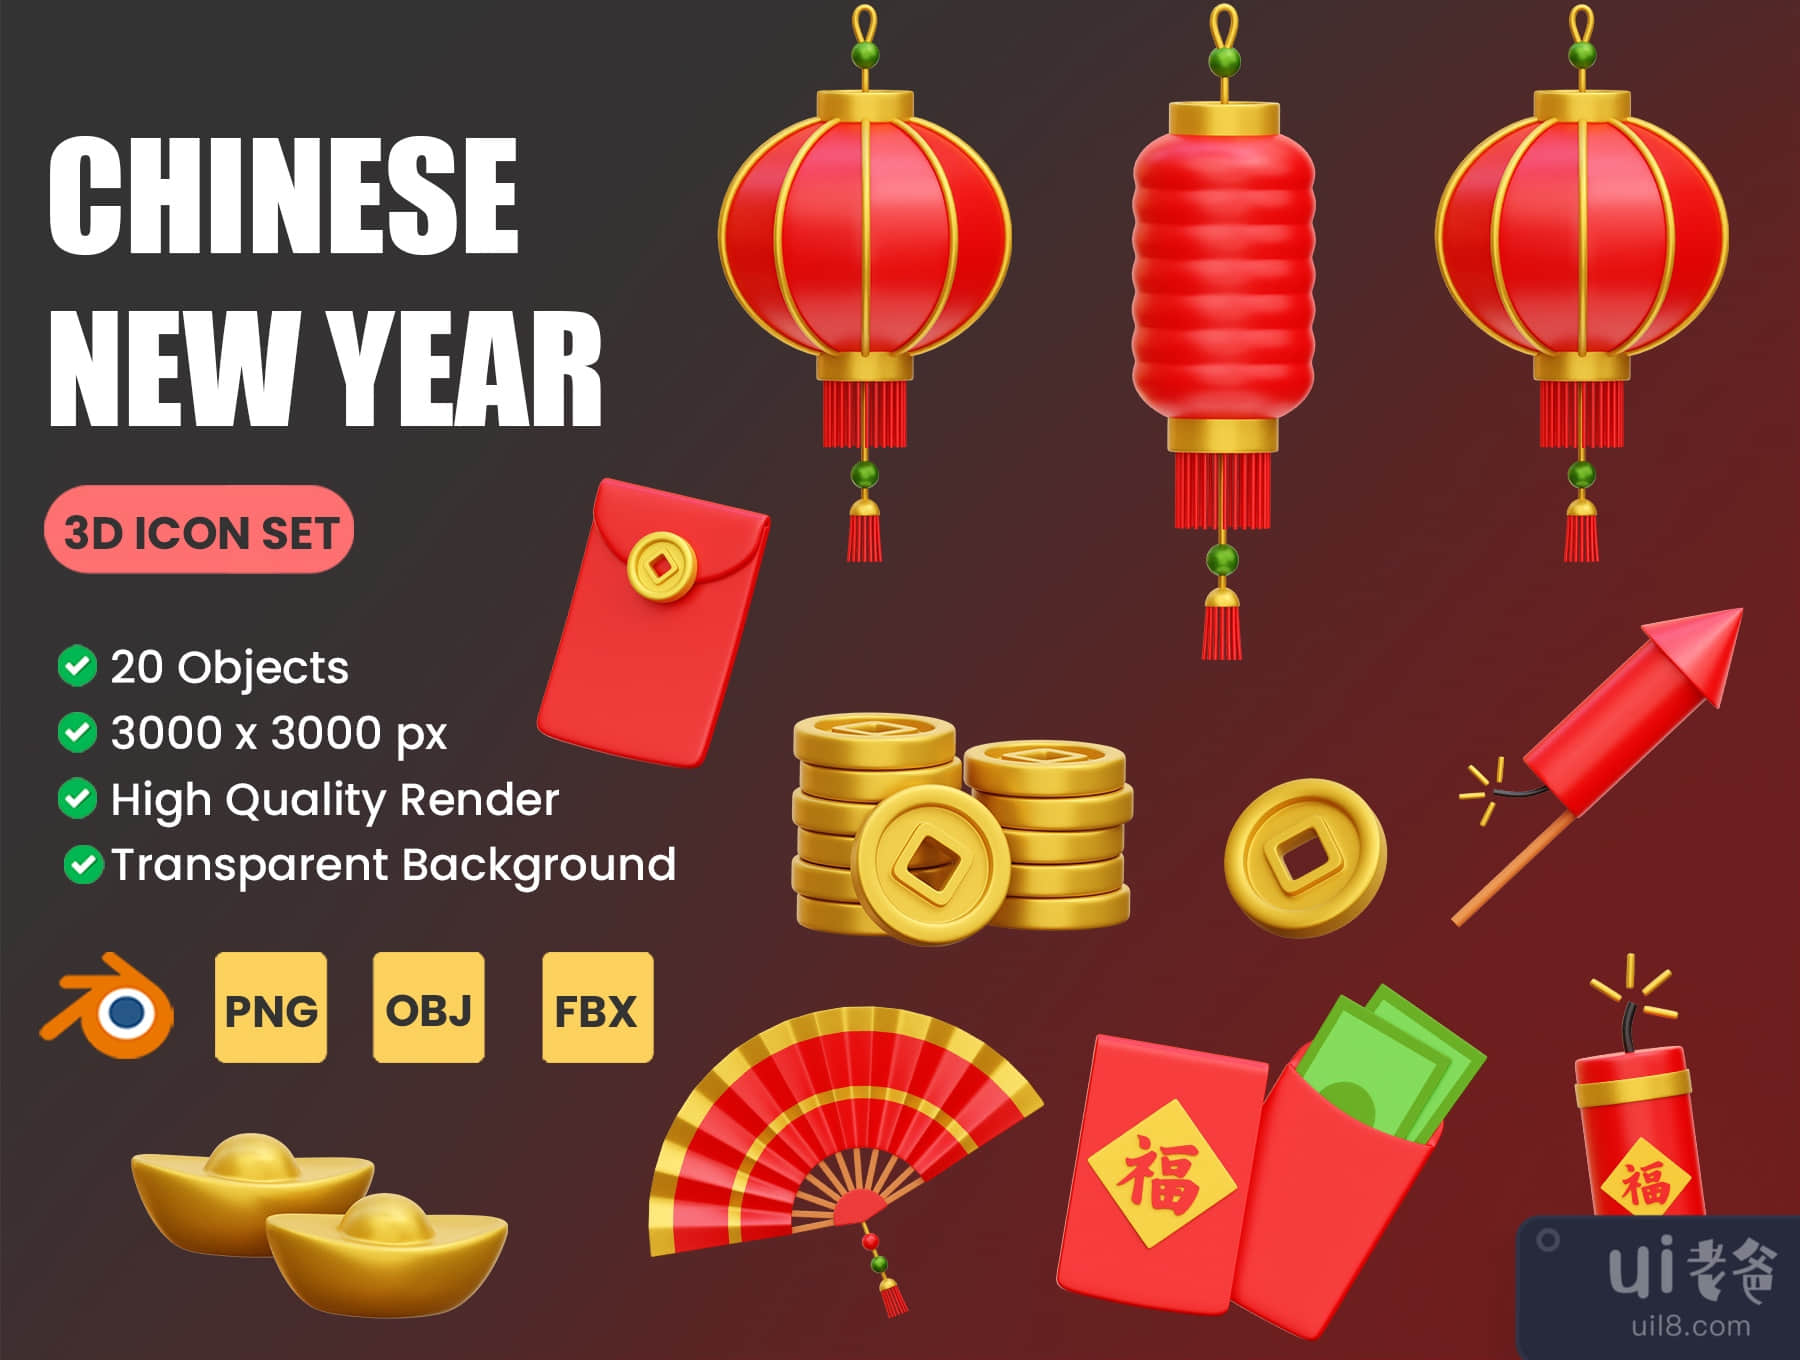 中国新年的3D图标插图 (Chinese New Year 3D Icon Illustrations)插图